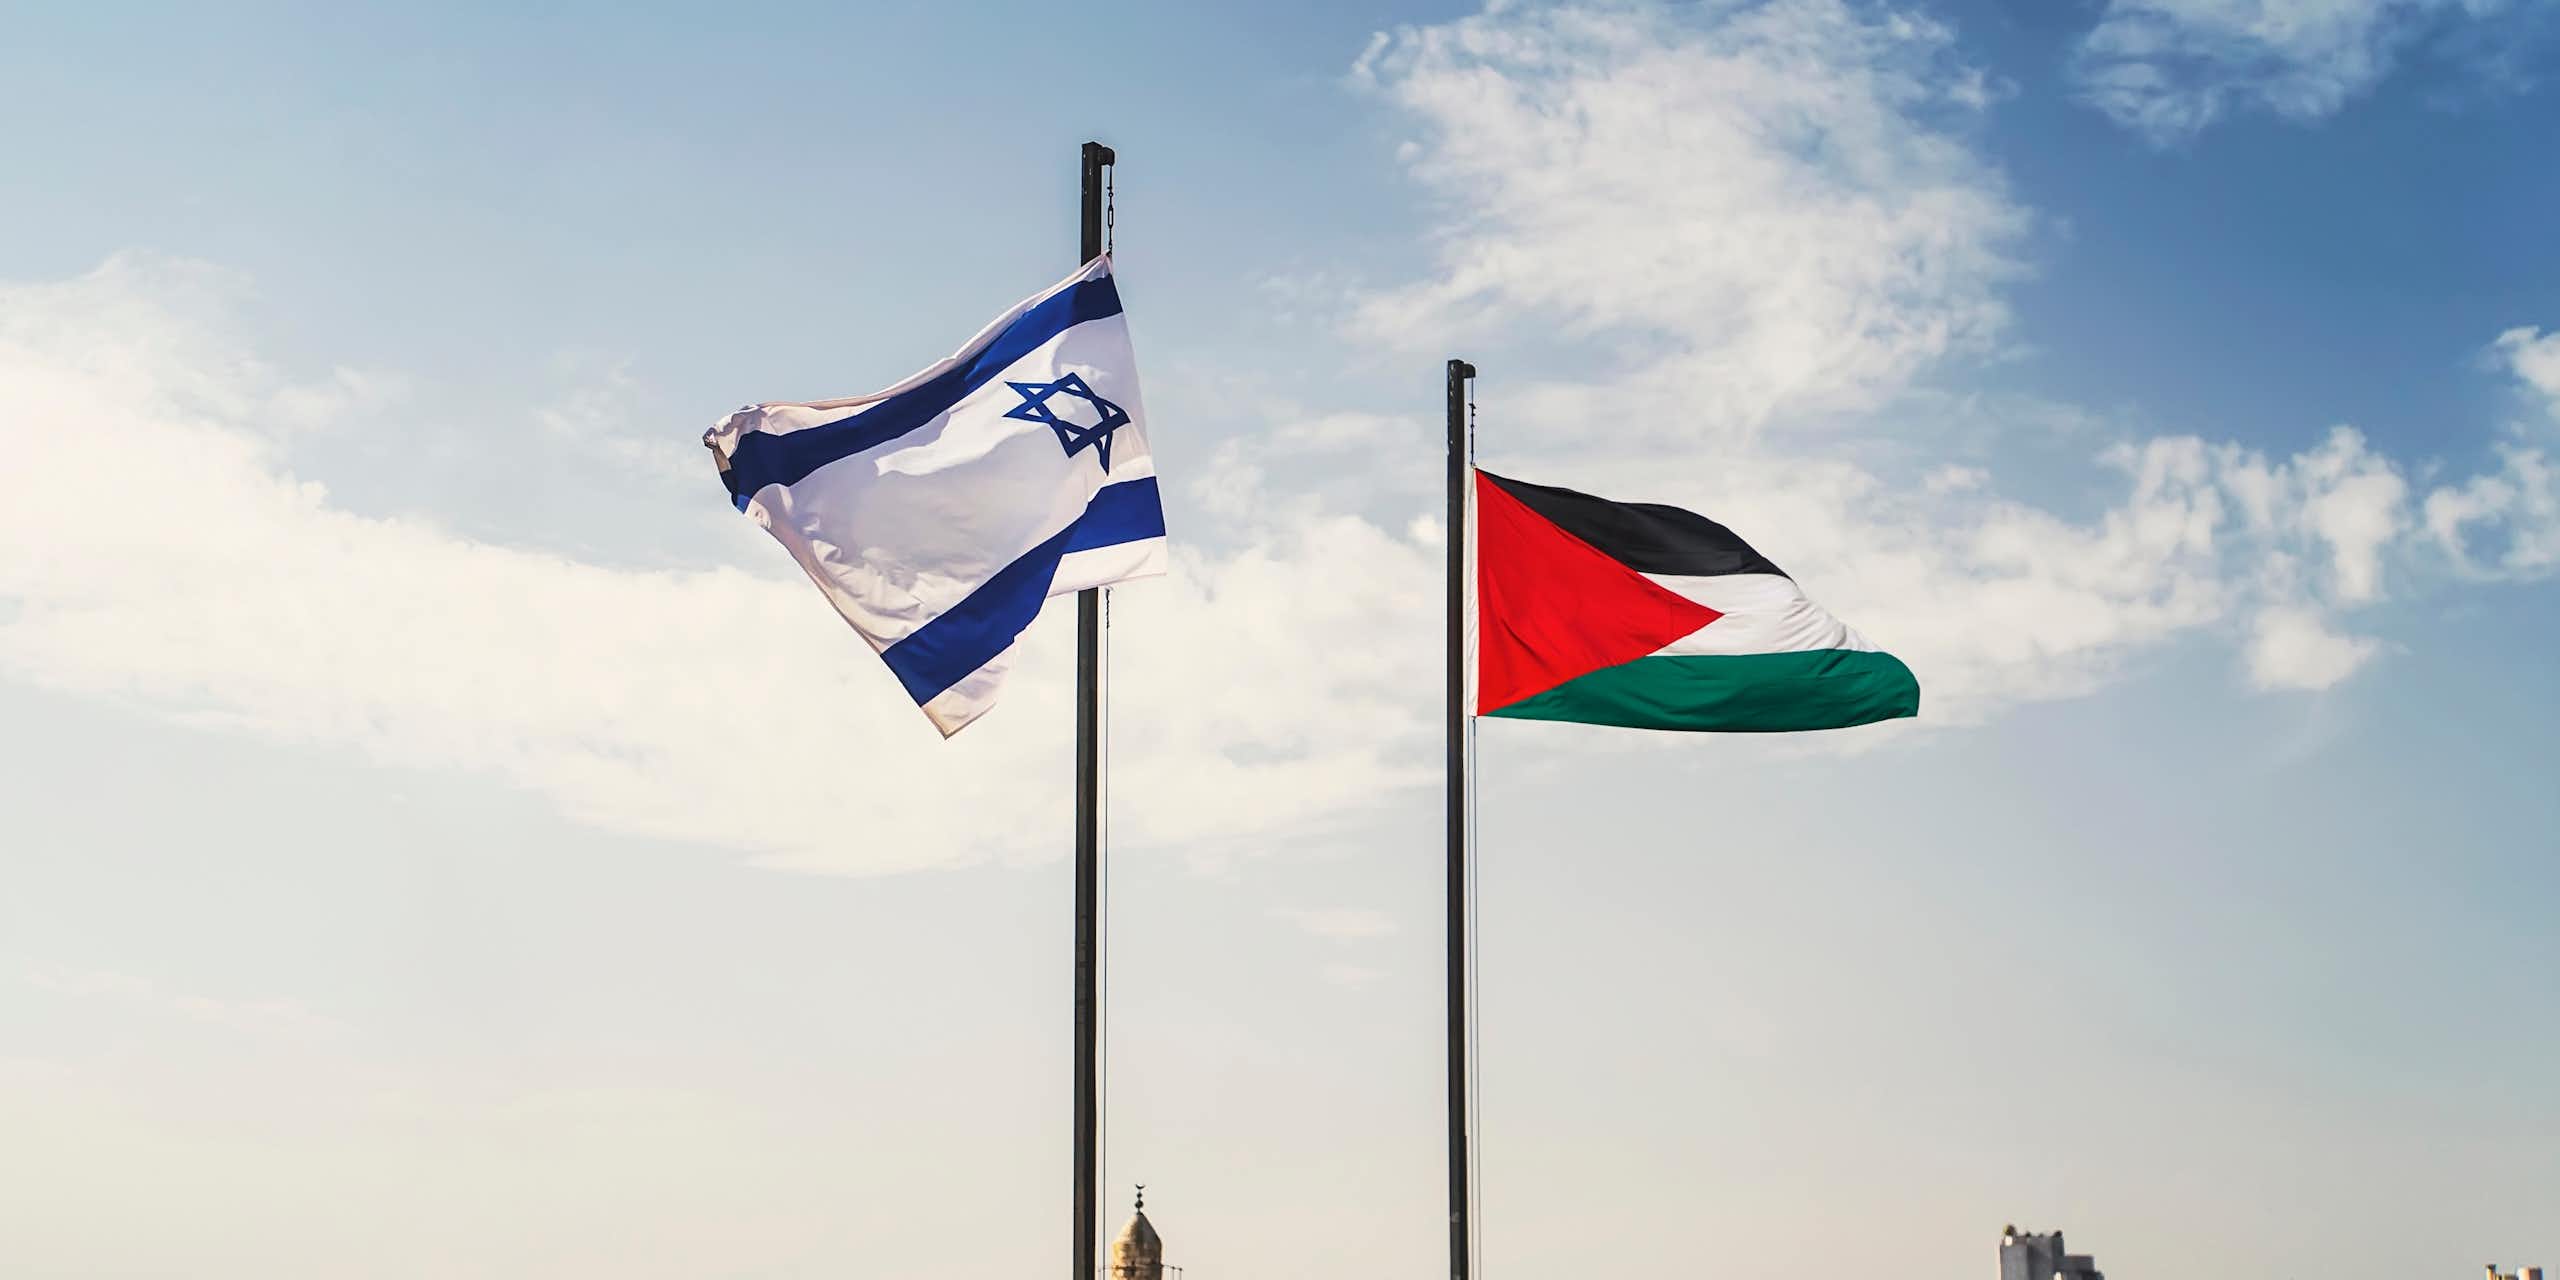 Réimaginer des horizons politiques en Israël/Palestine